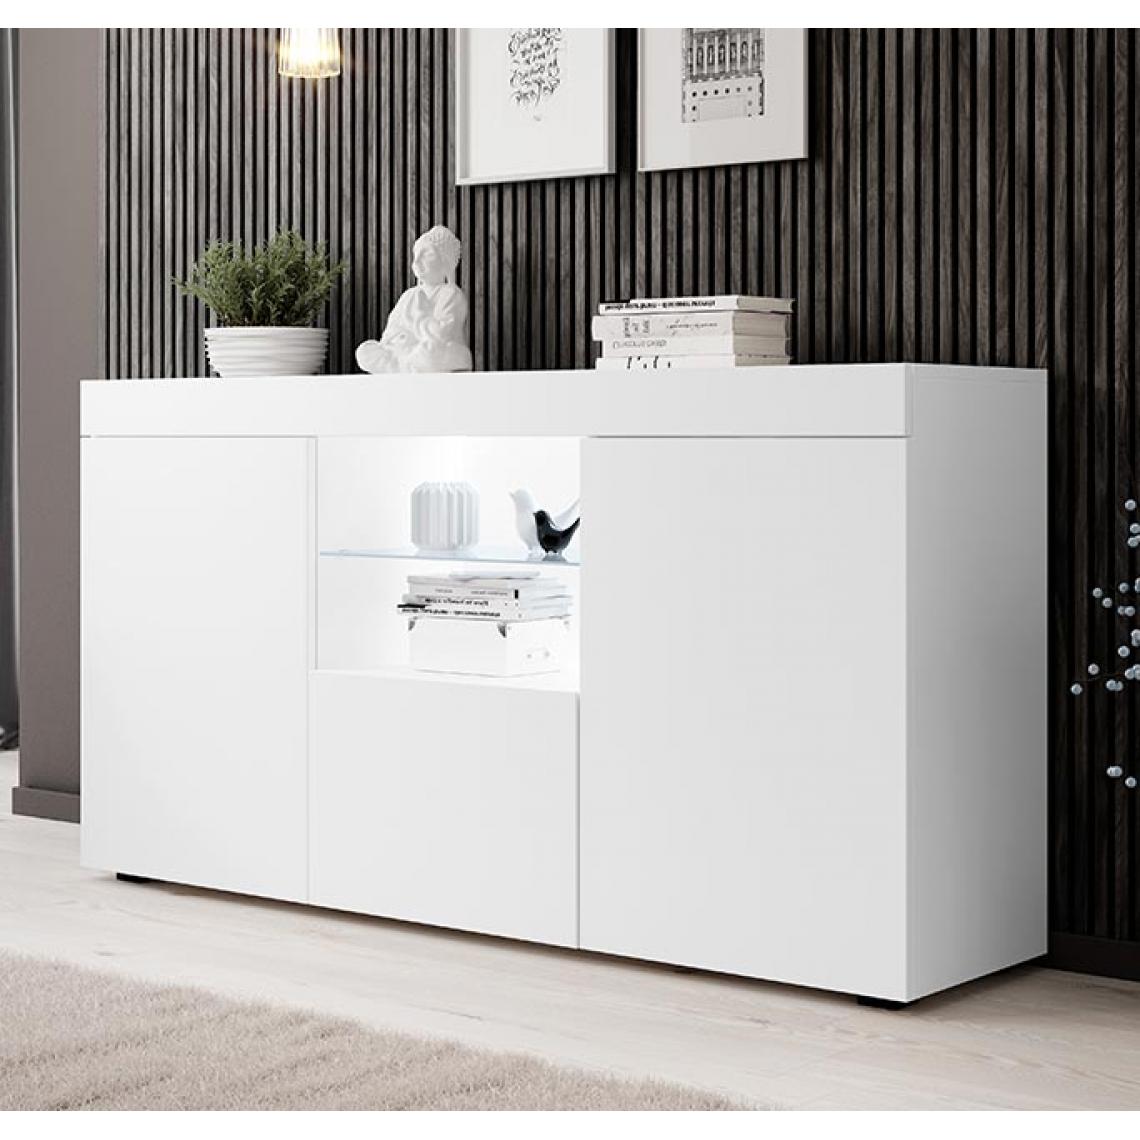 Design Ameublement - Bahut modèle Natolia couleur blanc mat 150x80cm - Buffets, chiffonniers